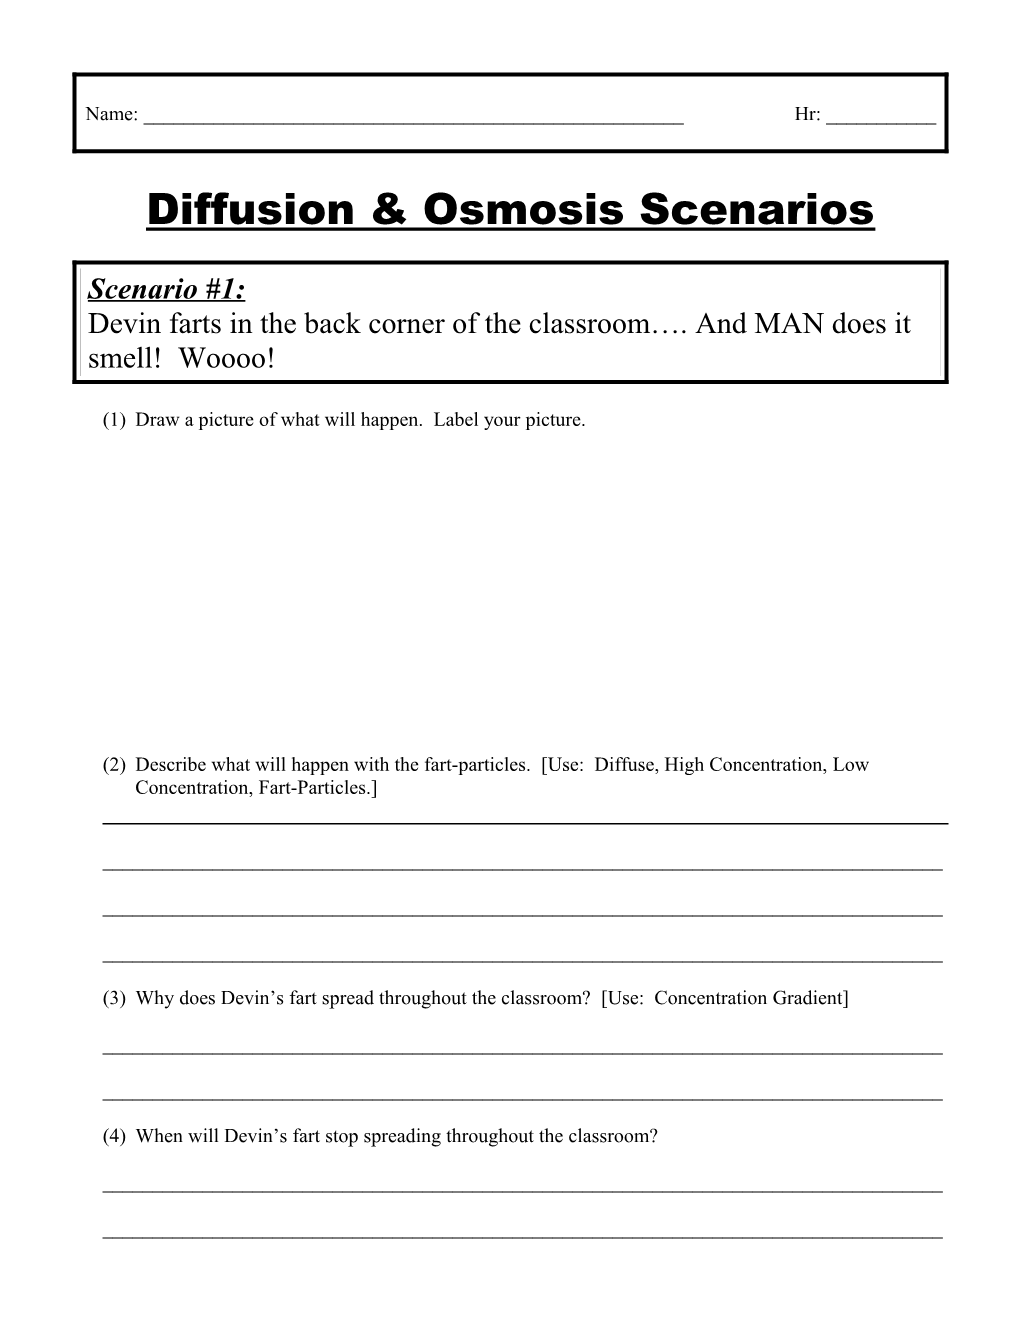 Diffusion & Osmosis Scenarios